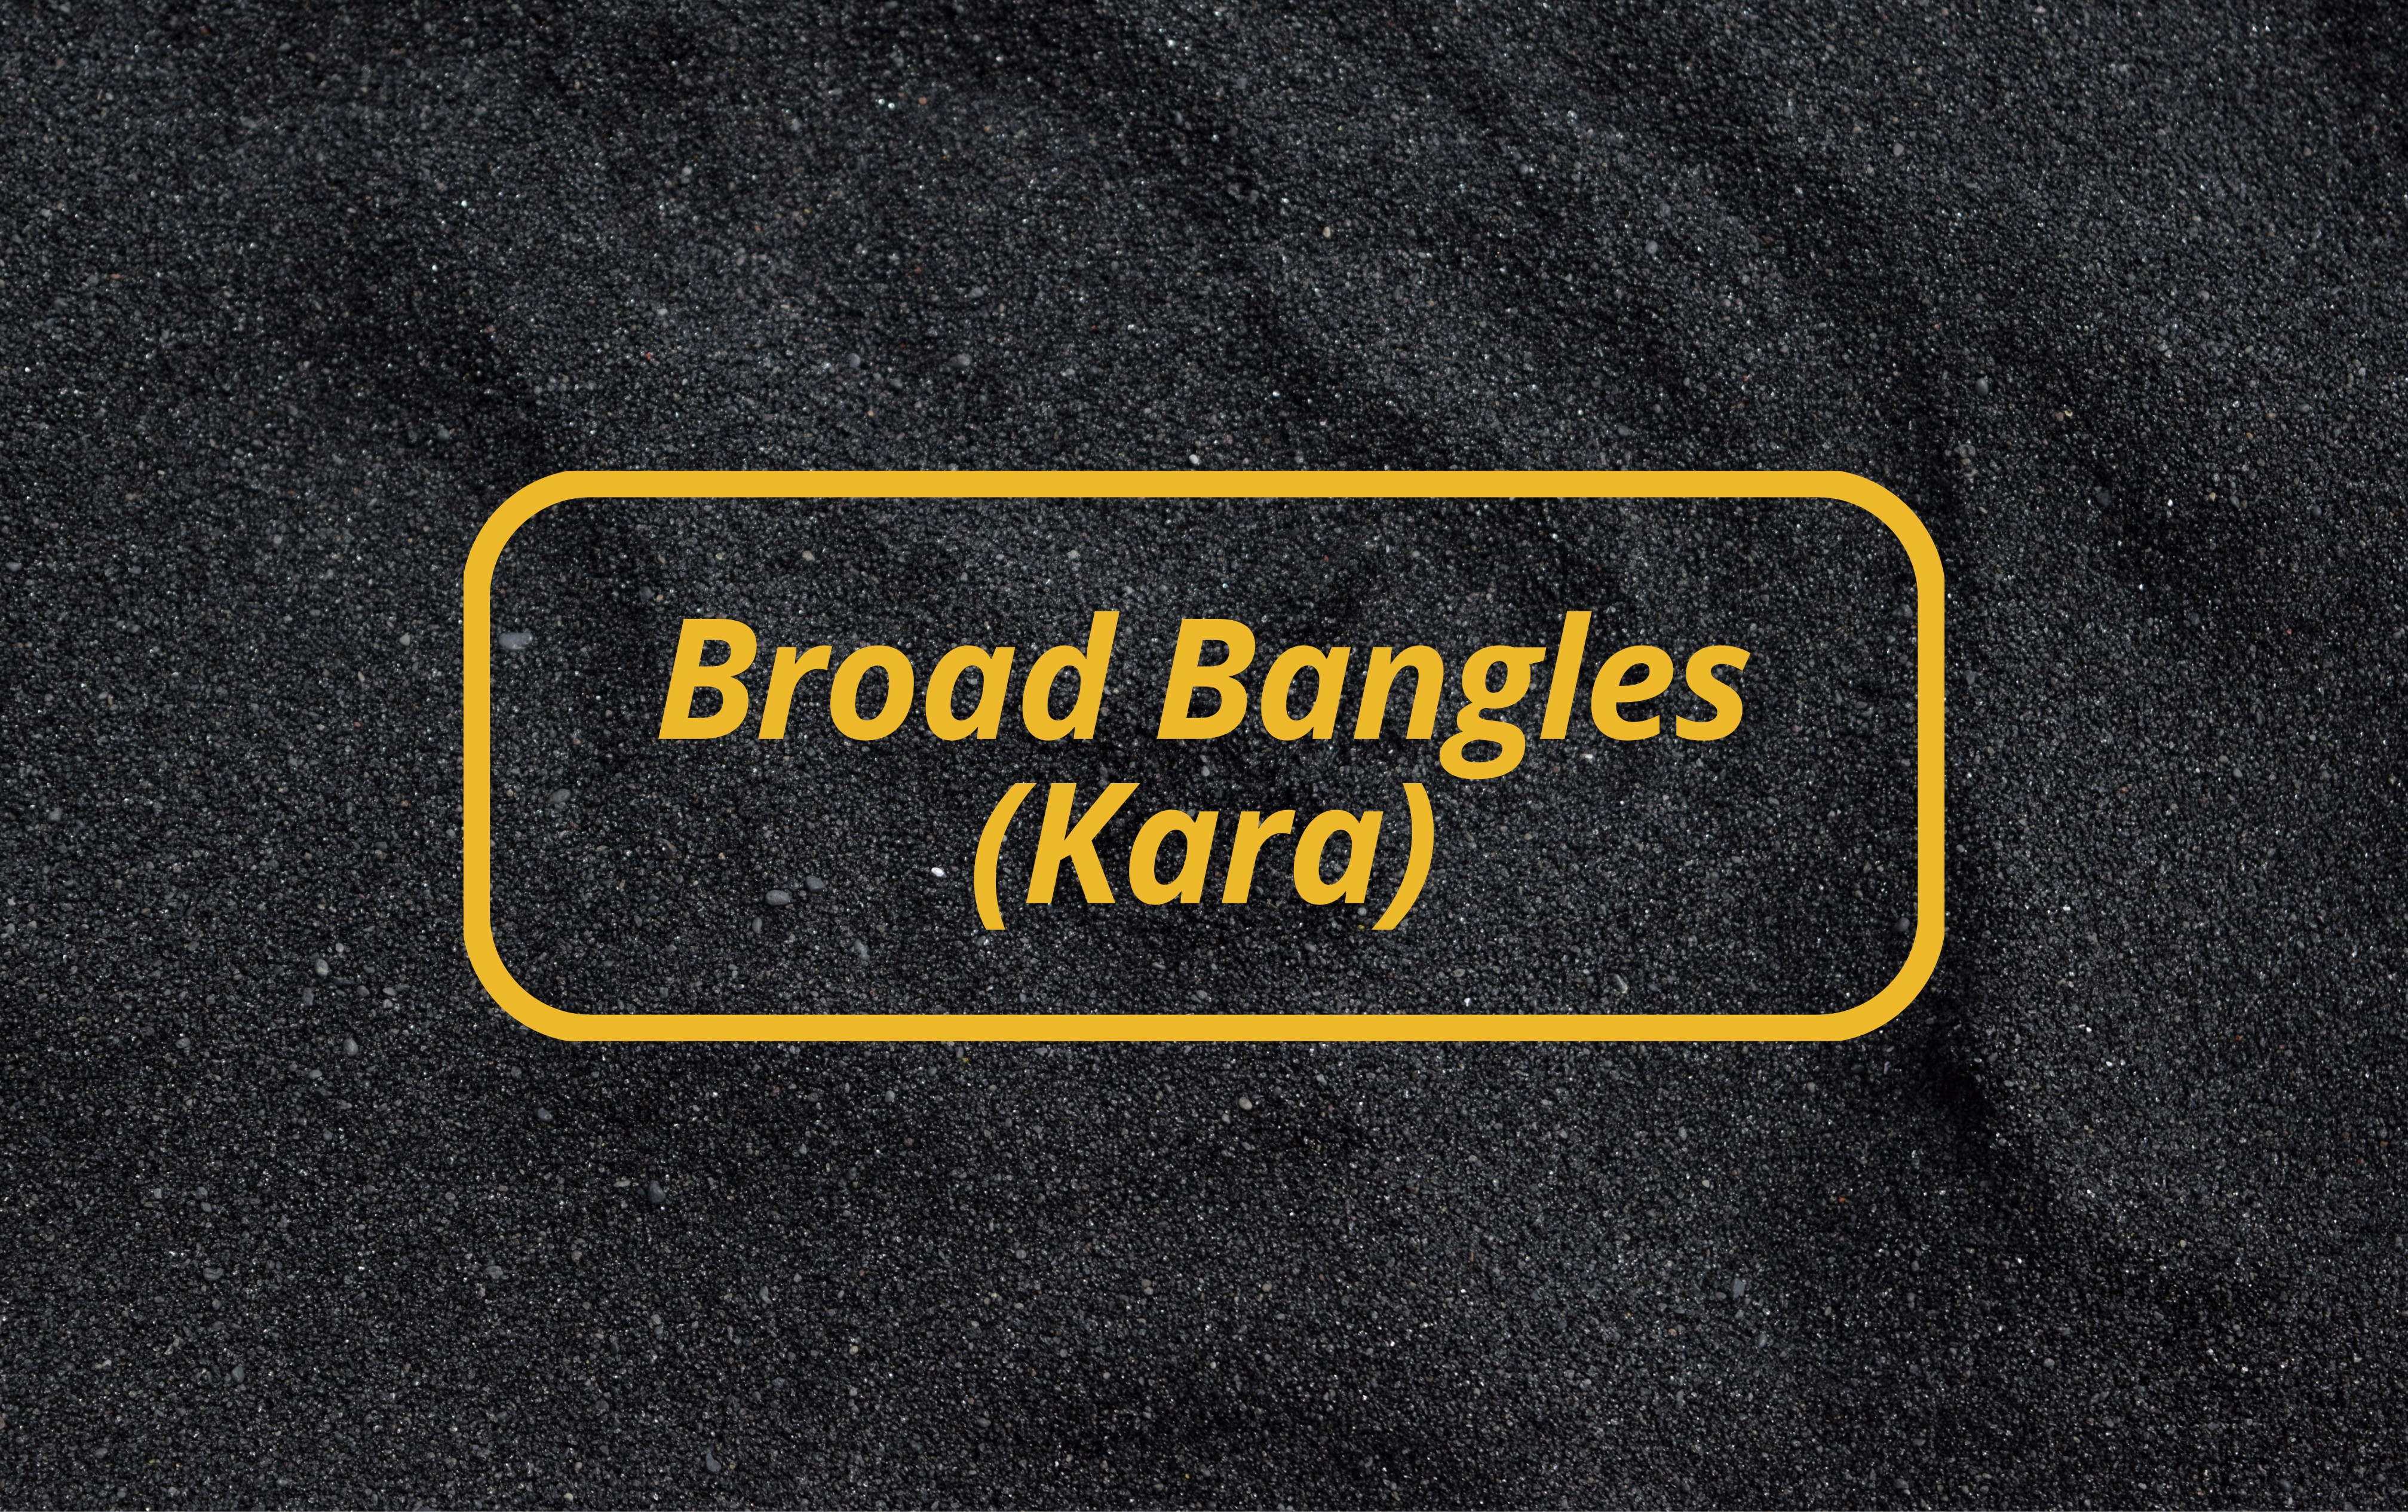 Broad Bangles (Kara)